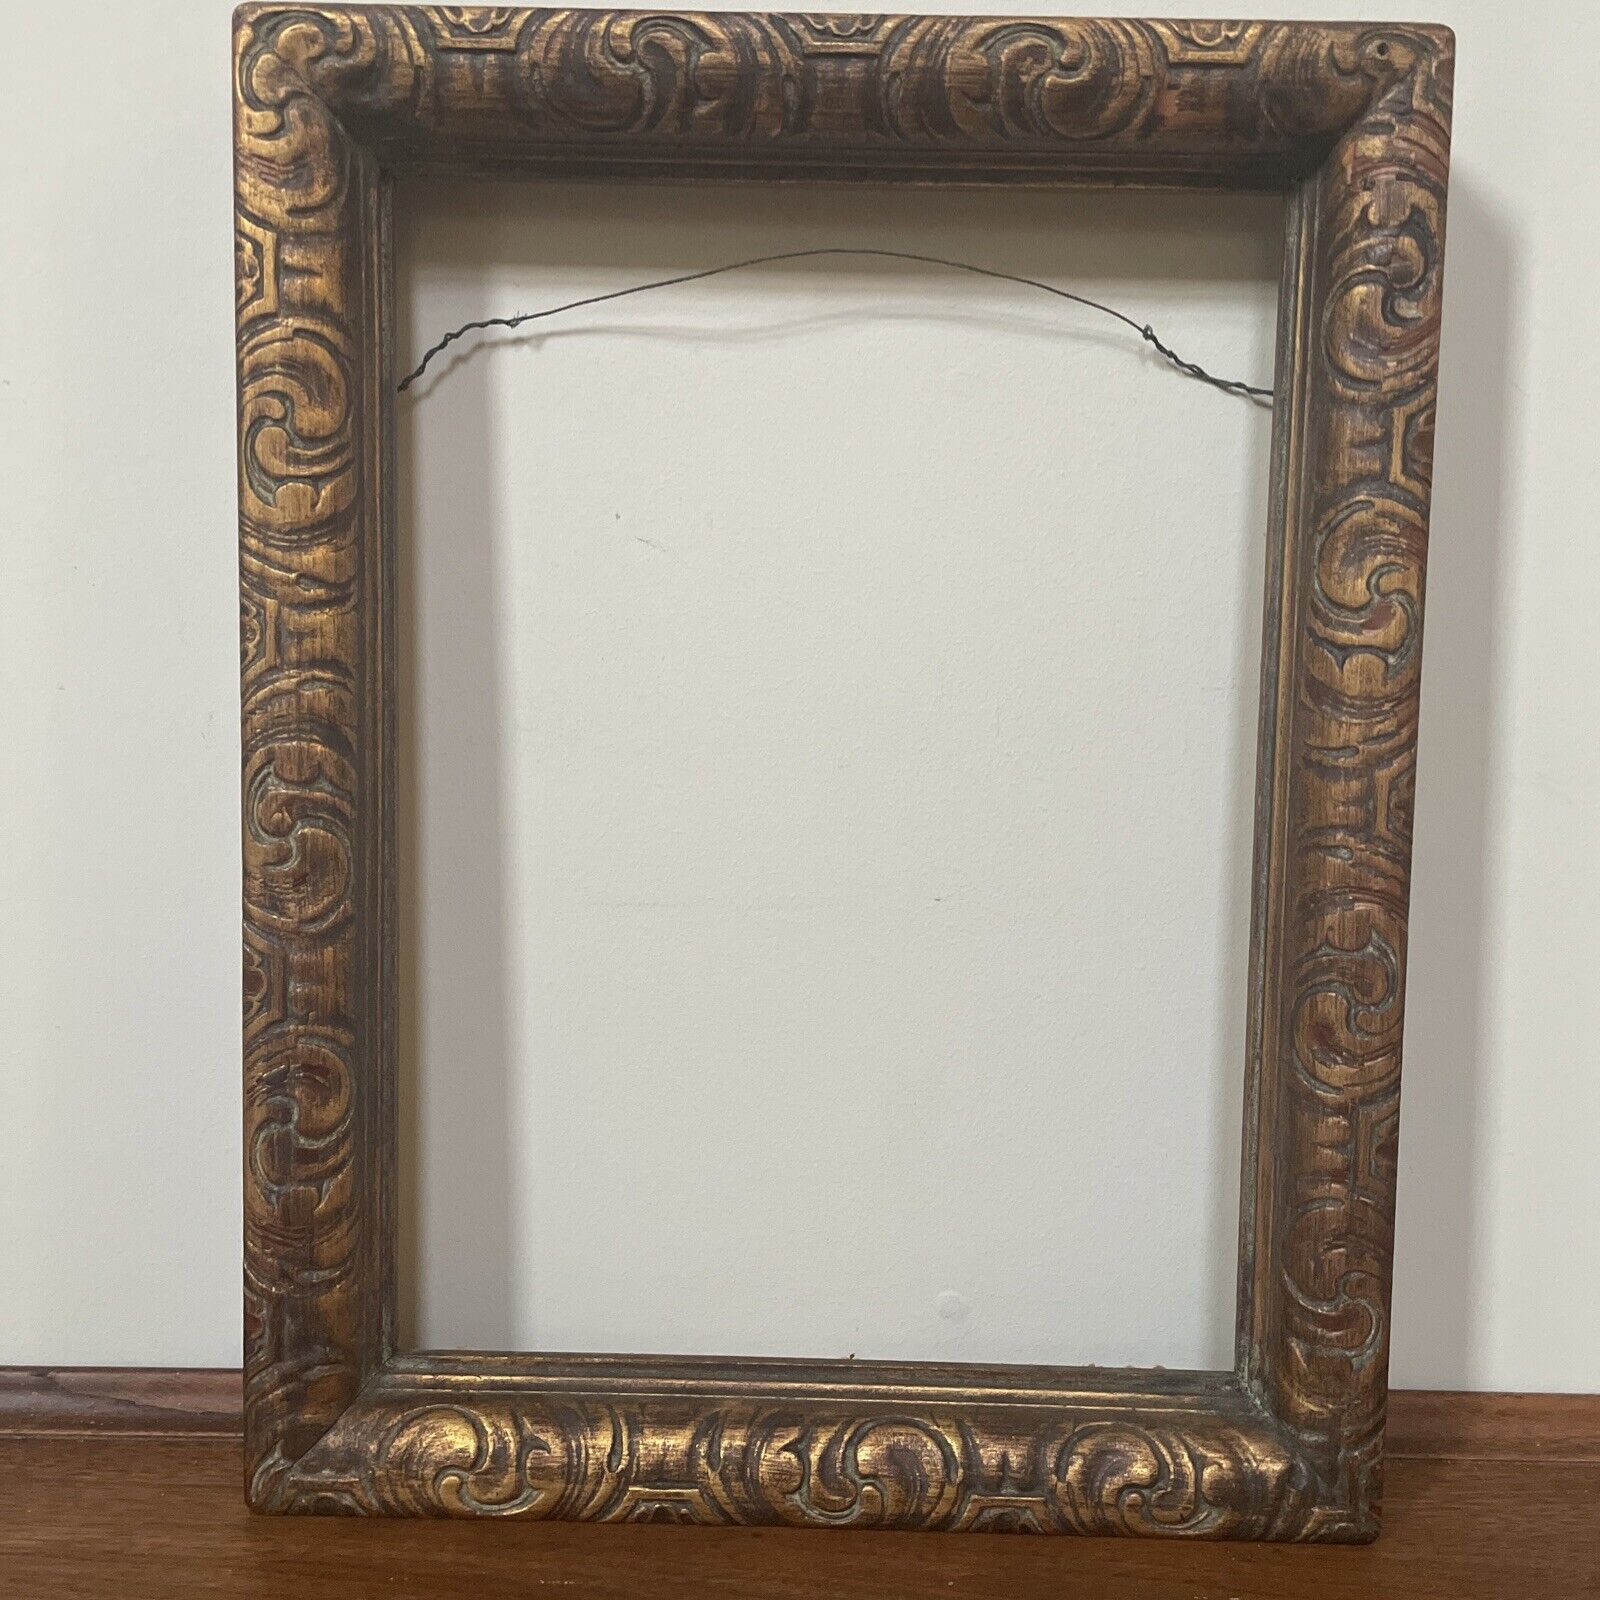 VTG Victorian Style Gold Gilded Ornate Stunning Wooden Art Frame-14.25x18.25x2”